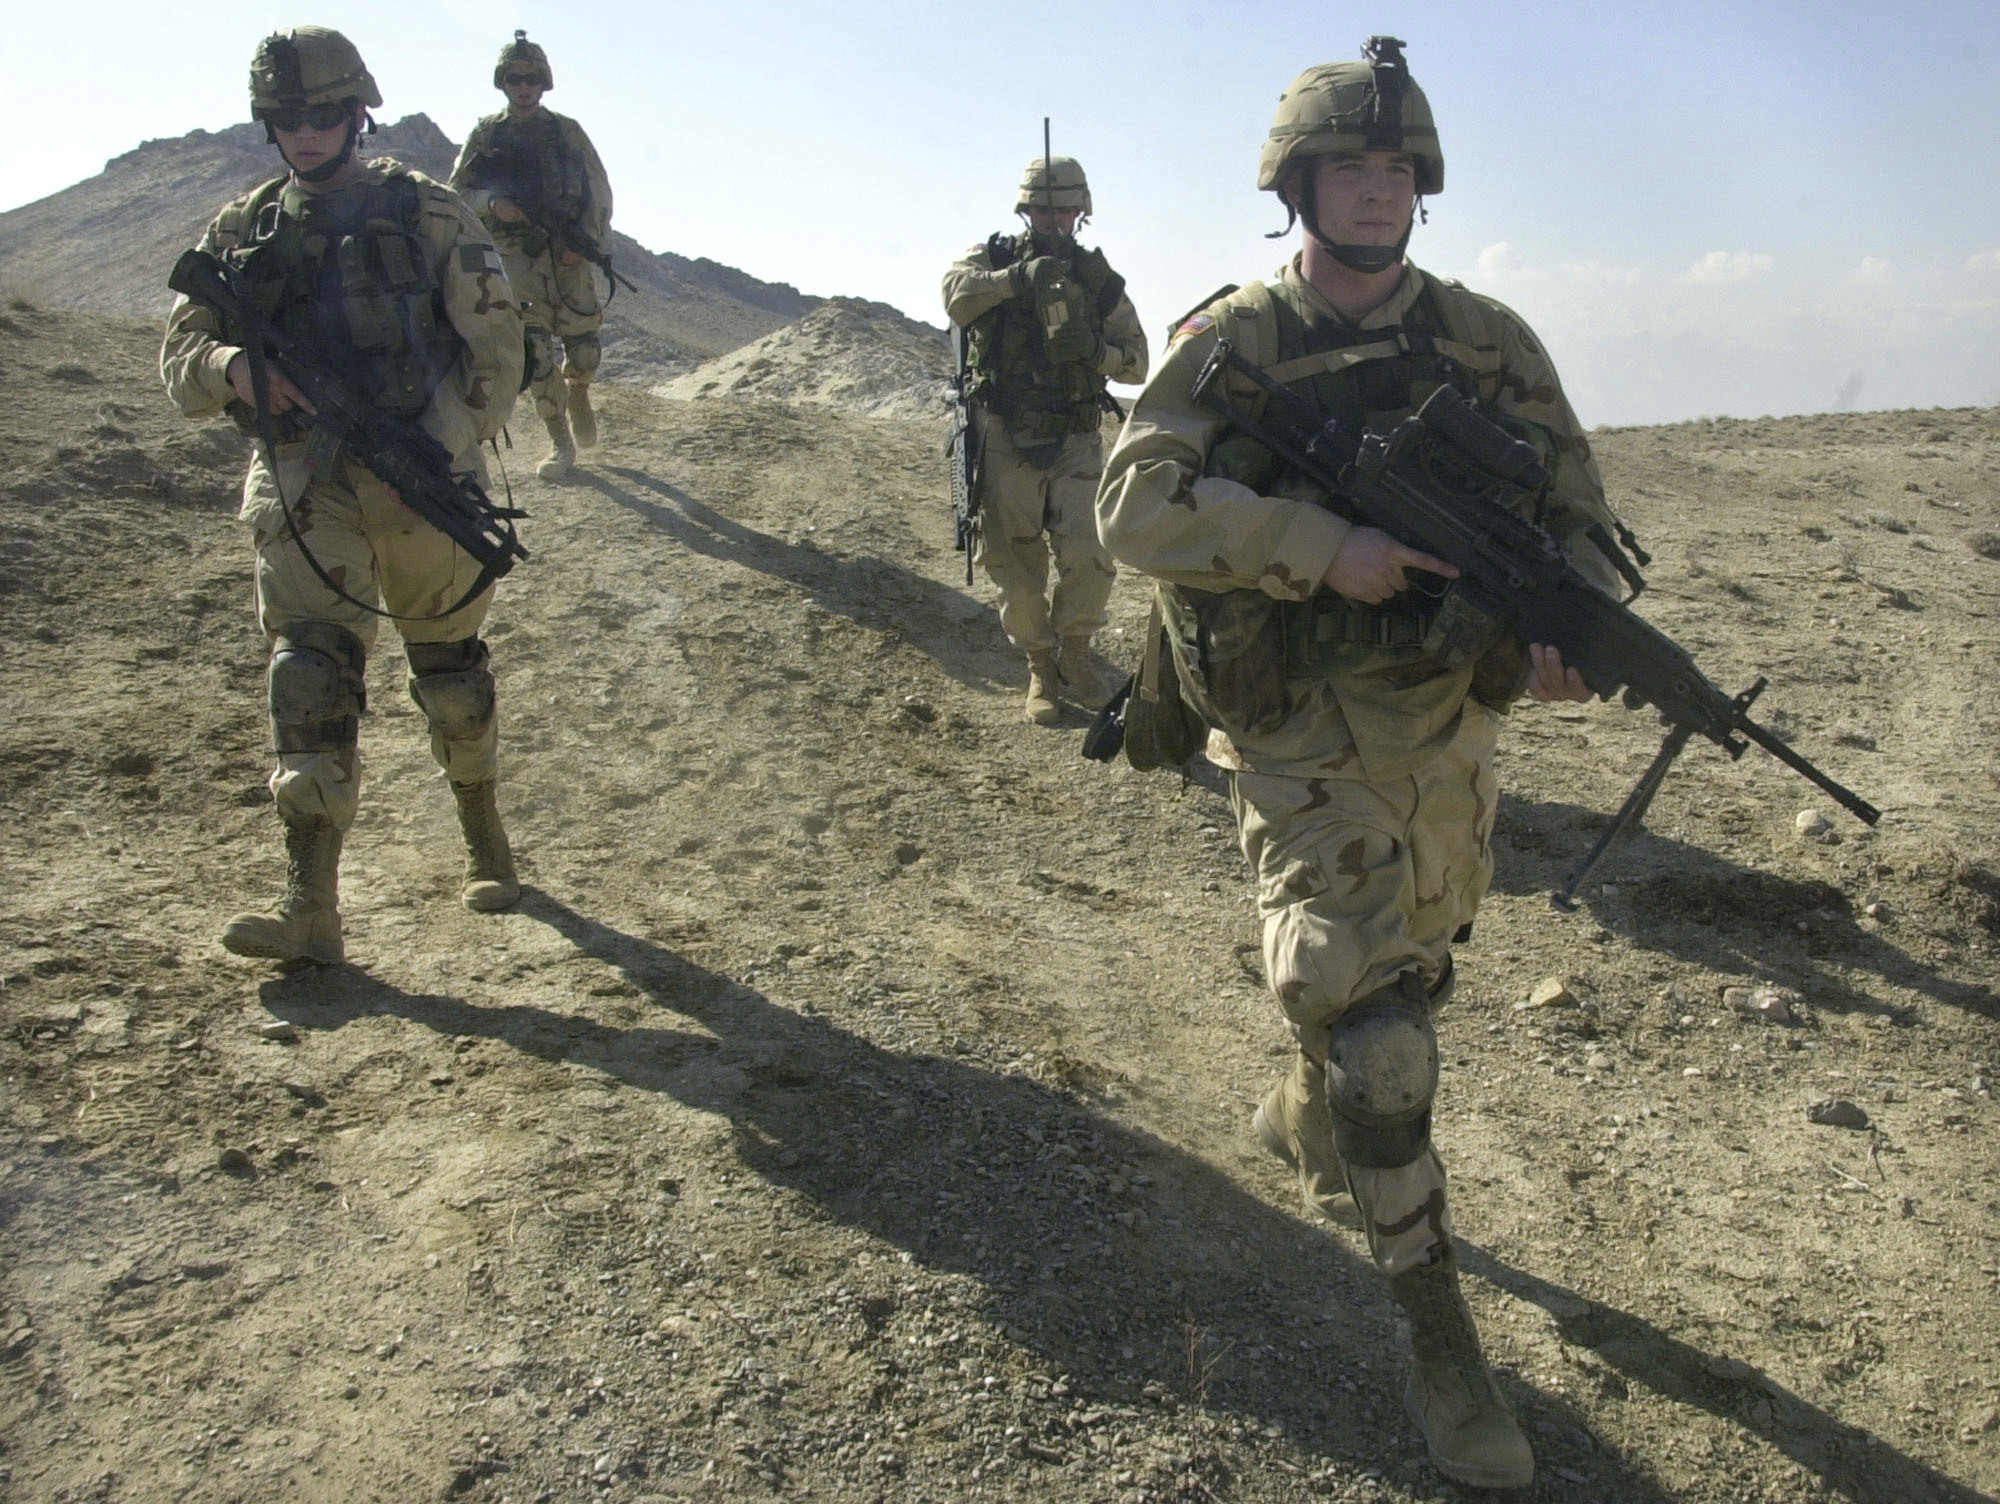 Sikerült vérig sérteniük a muszlimokat az Afganisztánban szolgáló amerikaiaknak